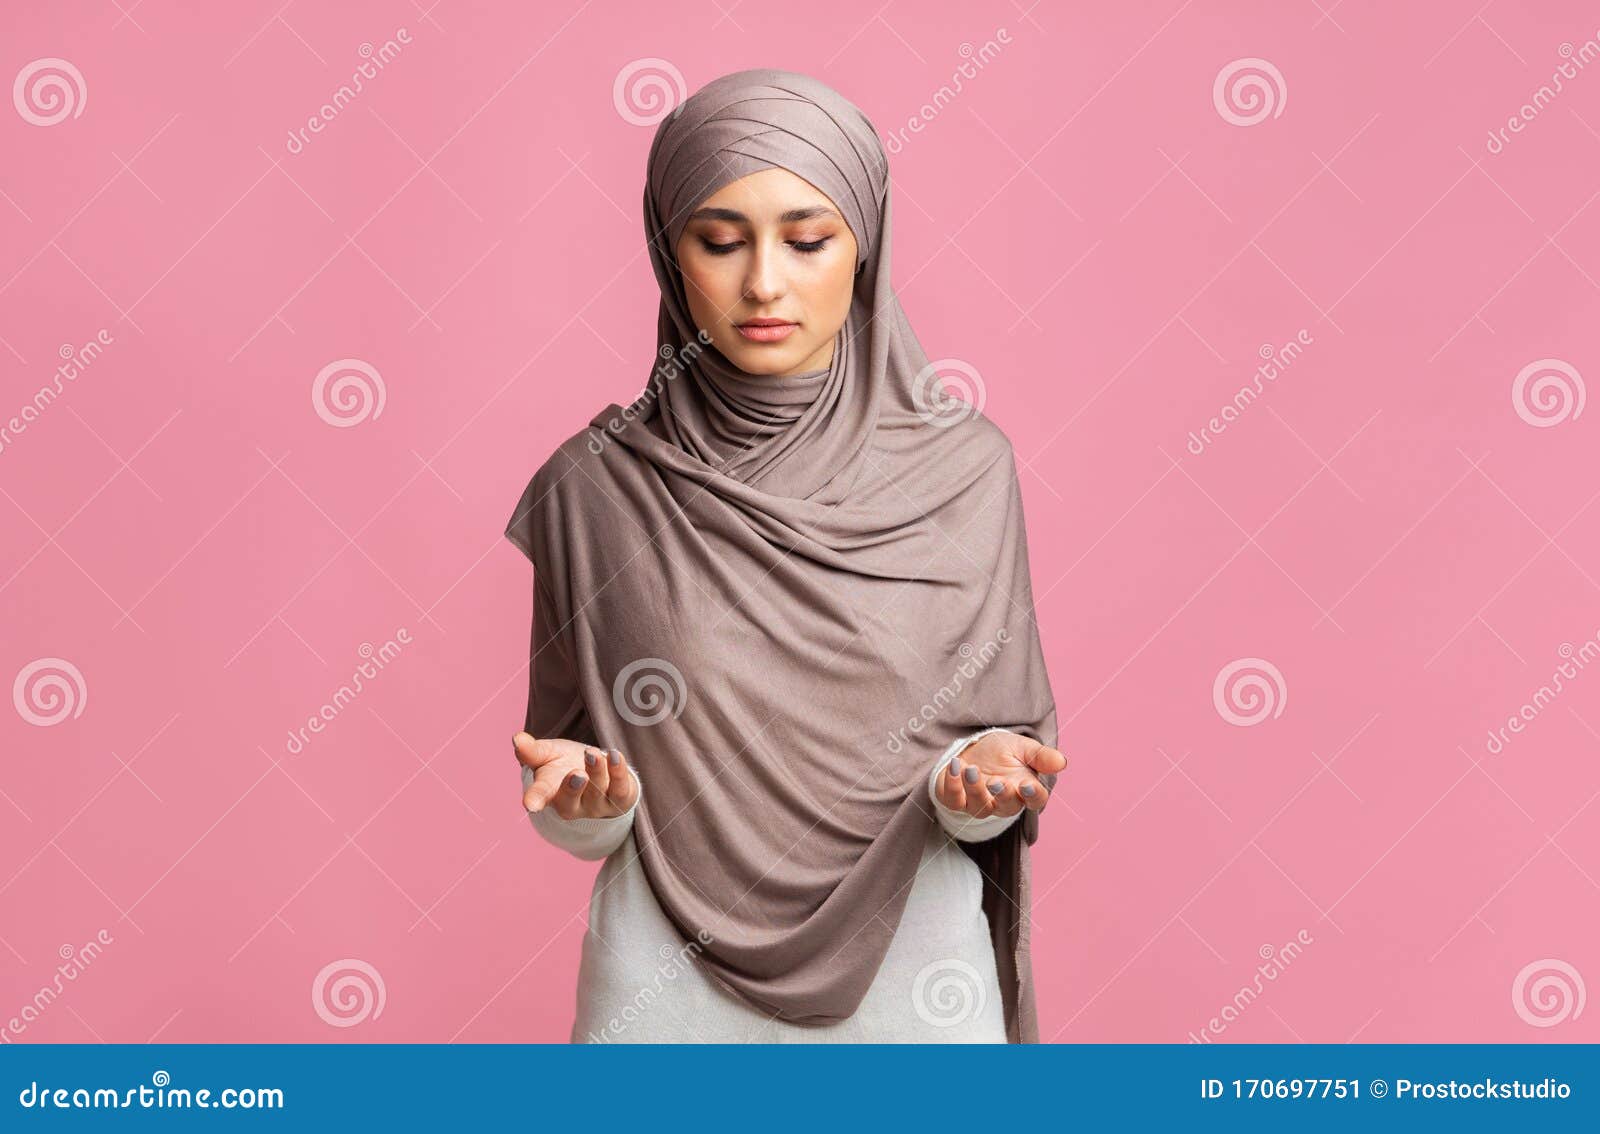 Springplank Refrein tellen Jonge, Mooie Moslimvrouw in Hoofddoek Die Over Een Roze Achtergrond Bidt  Stock Afbeelding - Image of moskee, kleding: 170697751